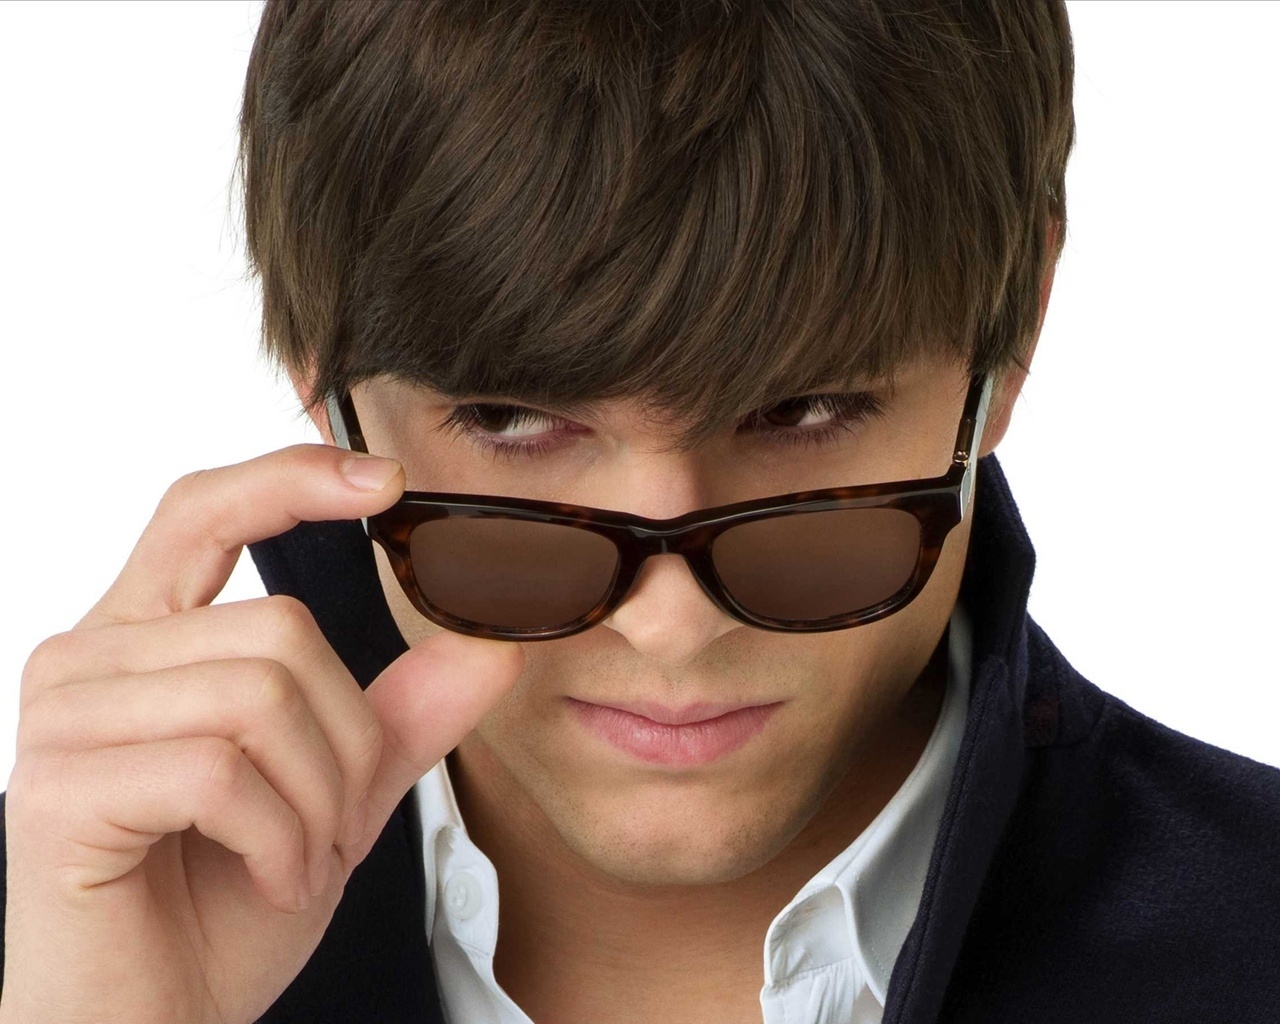 Ashton Kutcher with Sunglasses for 1280 x 1024 resolution